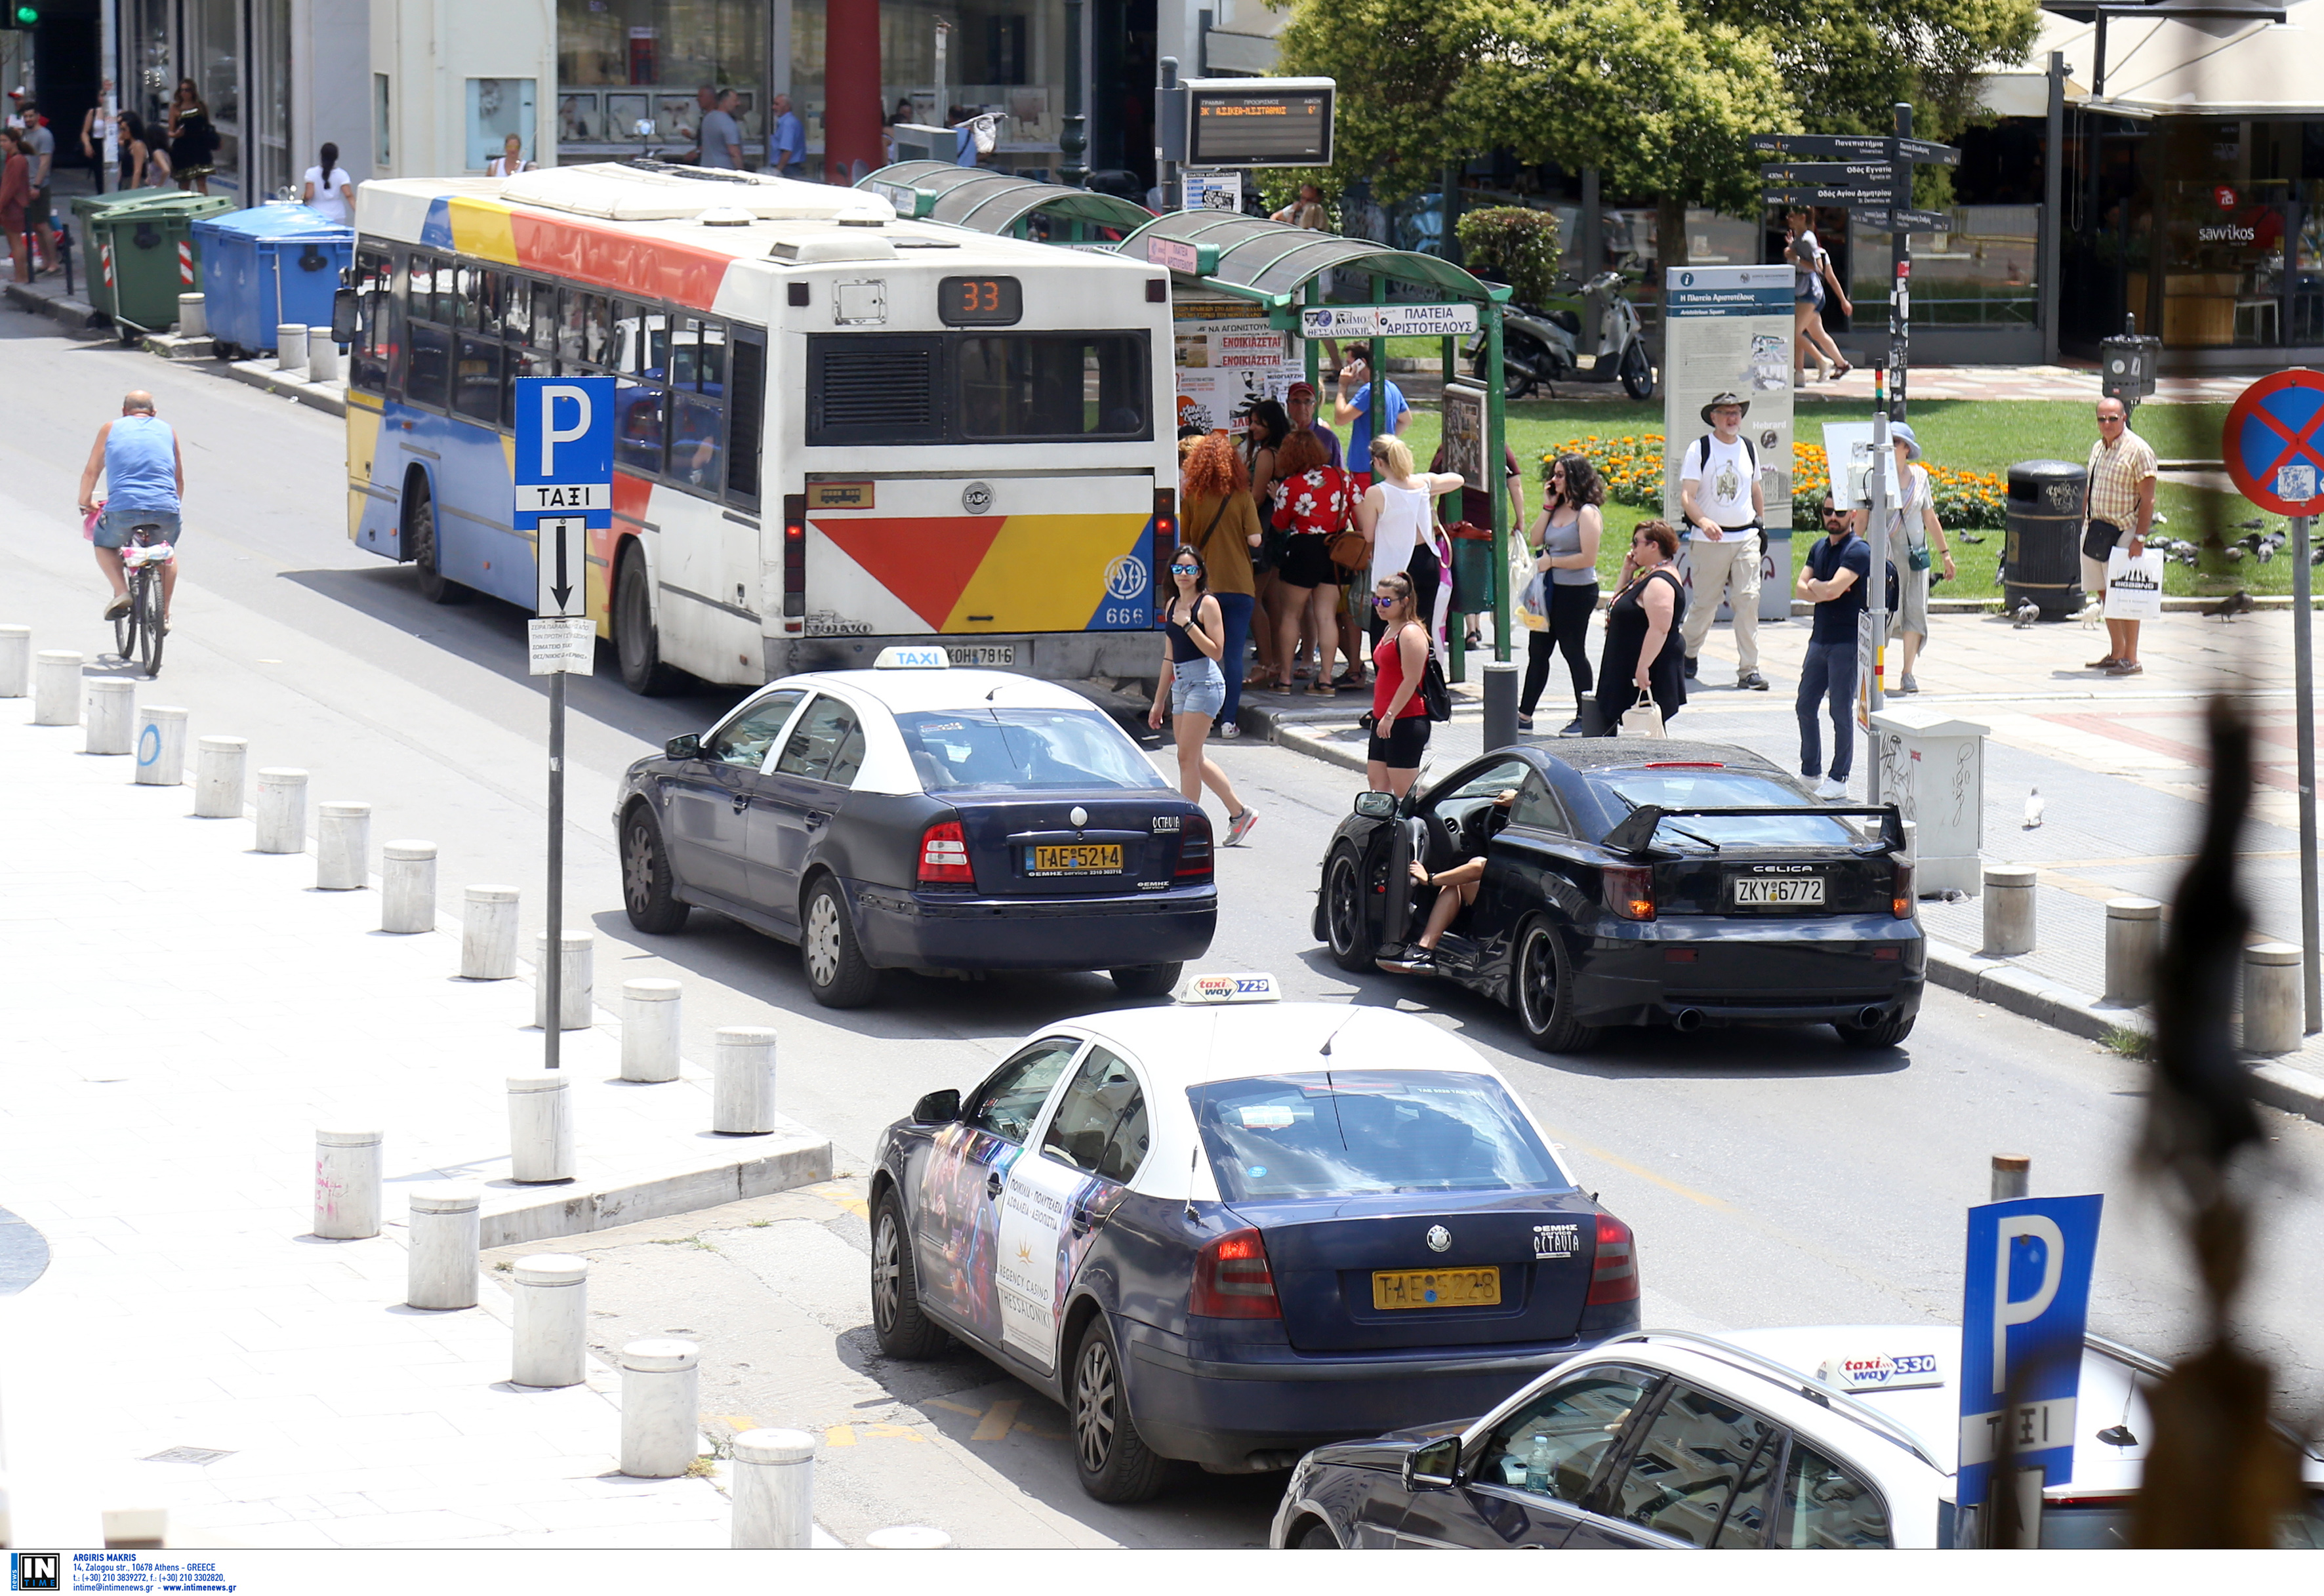 Θεσσαλονίκη: Χαμός σε λεωφορείο – Η παραπλάνηση και το σχέδιο λίγο πριν ανοίξουν οι πόρτες στη στάση!